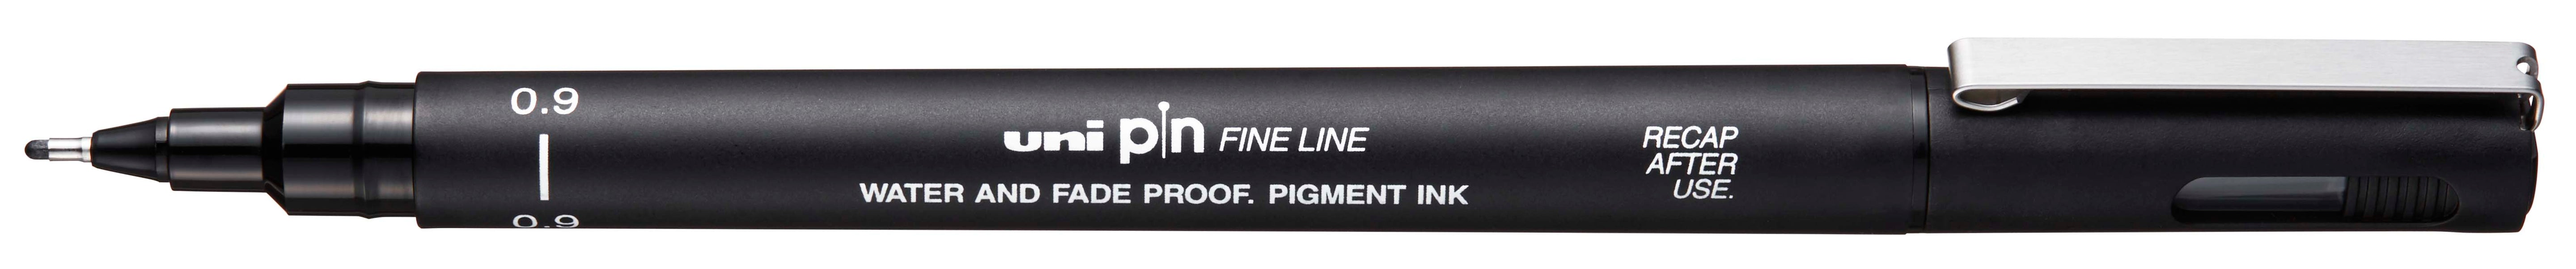 Waterproof black artist fine pen unipin 09